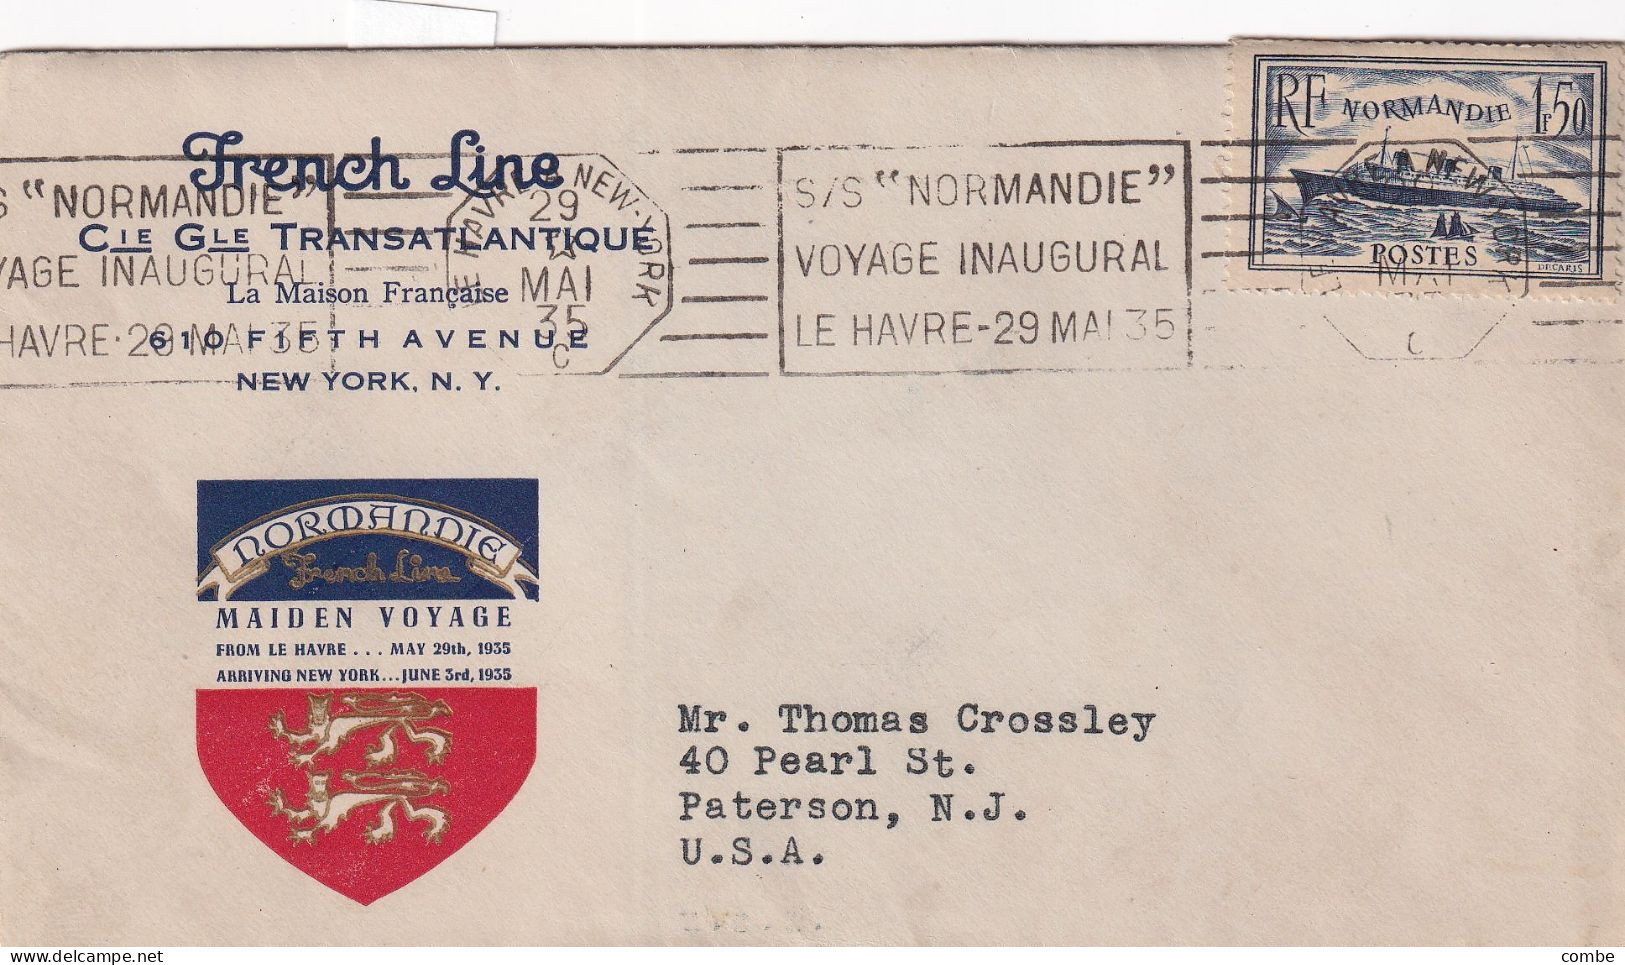 LETTRE. VOYAGE INAUGURAL S/ NORMANDIE. LE HAVRE. 29 MAI 1935. MAIDEN VOYAGE ET VIGNETTE - Maritime Post